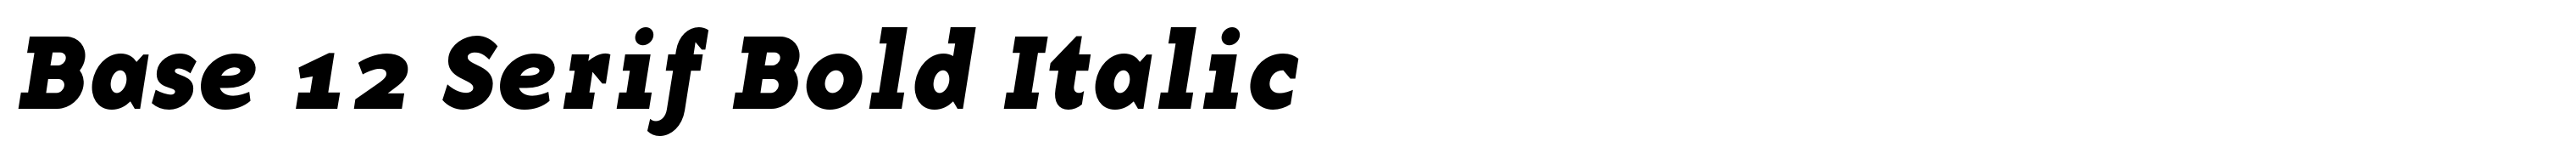 Base 12 Serif Bold Italic